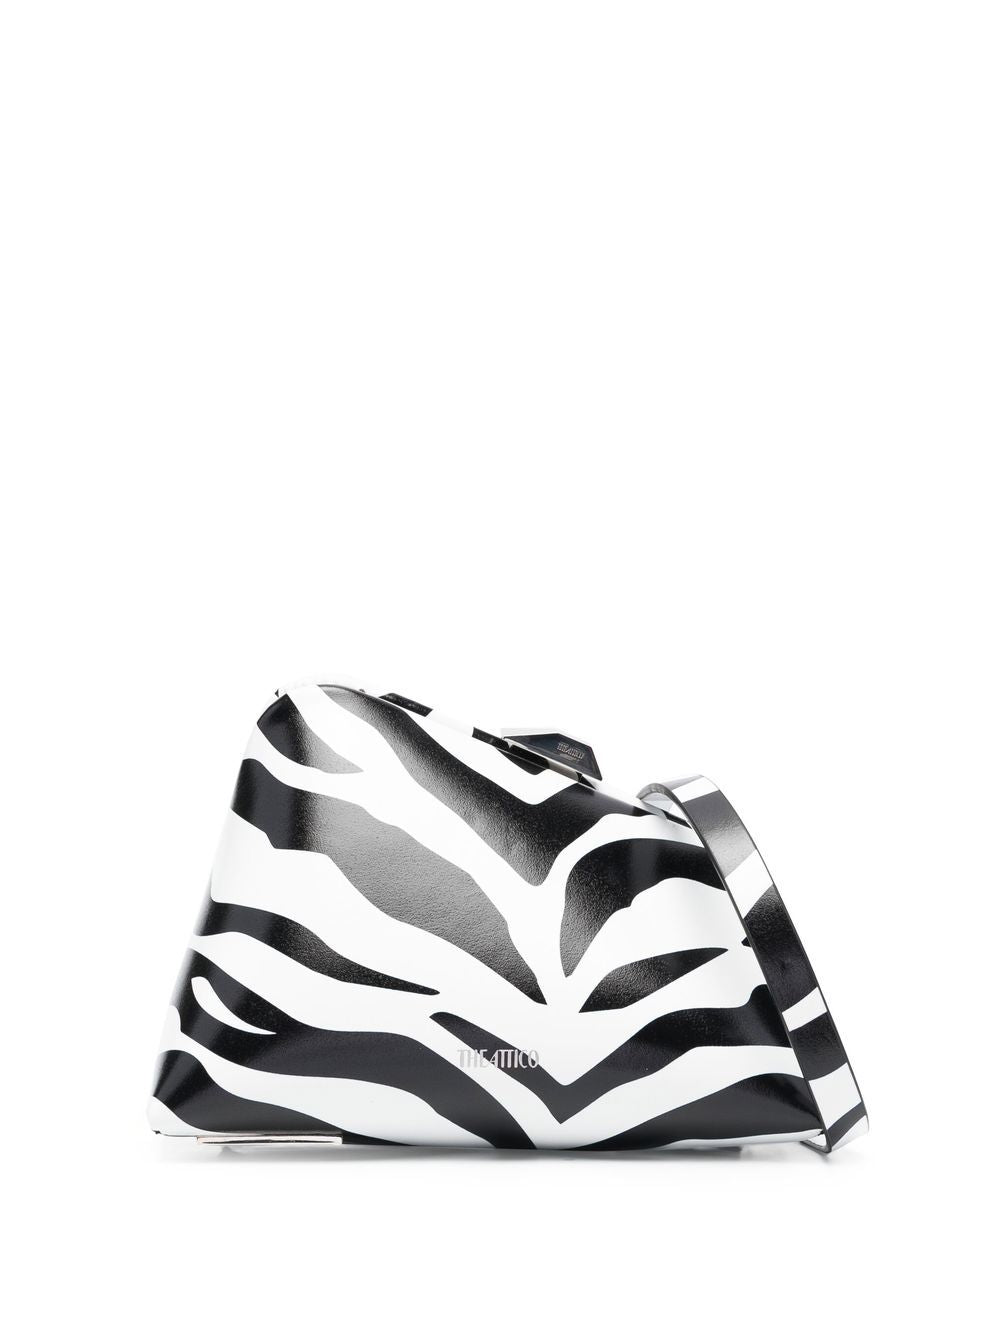 Clutch 8.30 tối in Logo-Trang cho Phụ Nữ| Thiết Kế Vỏ Bao Họa Tiết Zebra